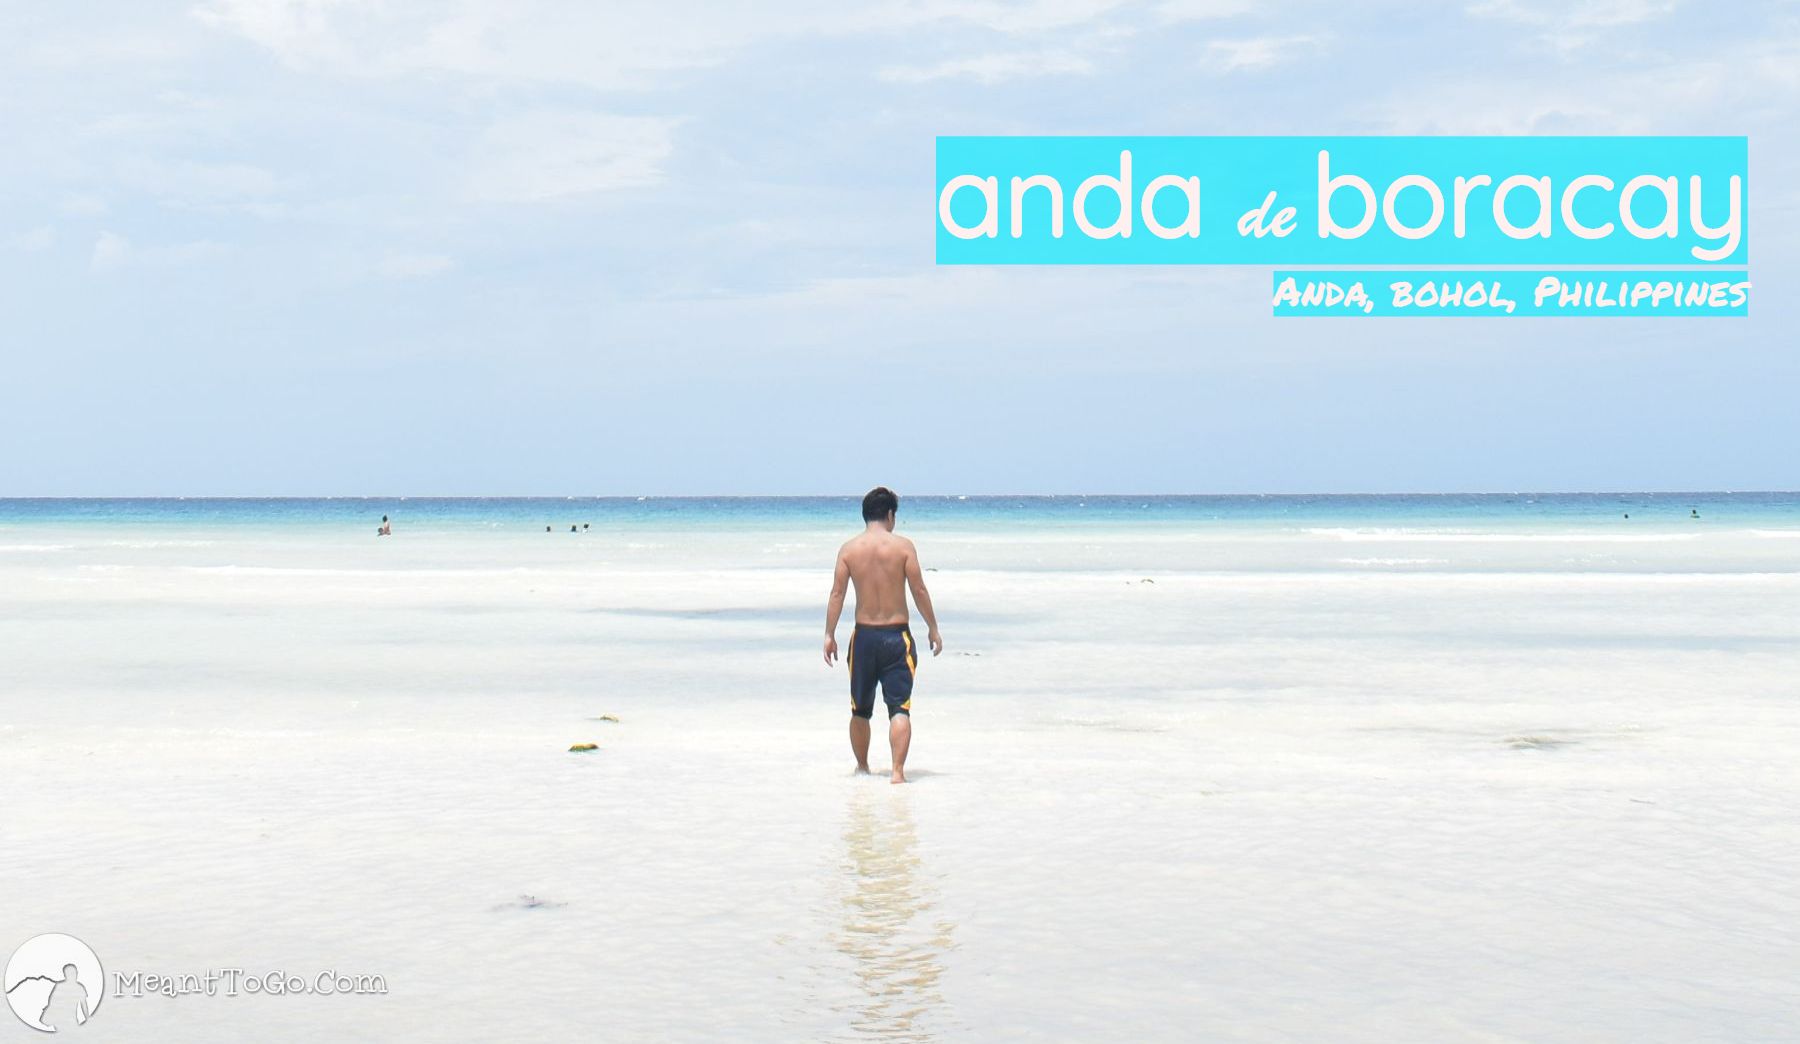 Anda de Boracay in Bohol Should Learn from Boracay’s Fate